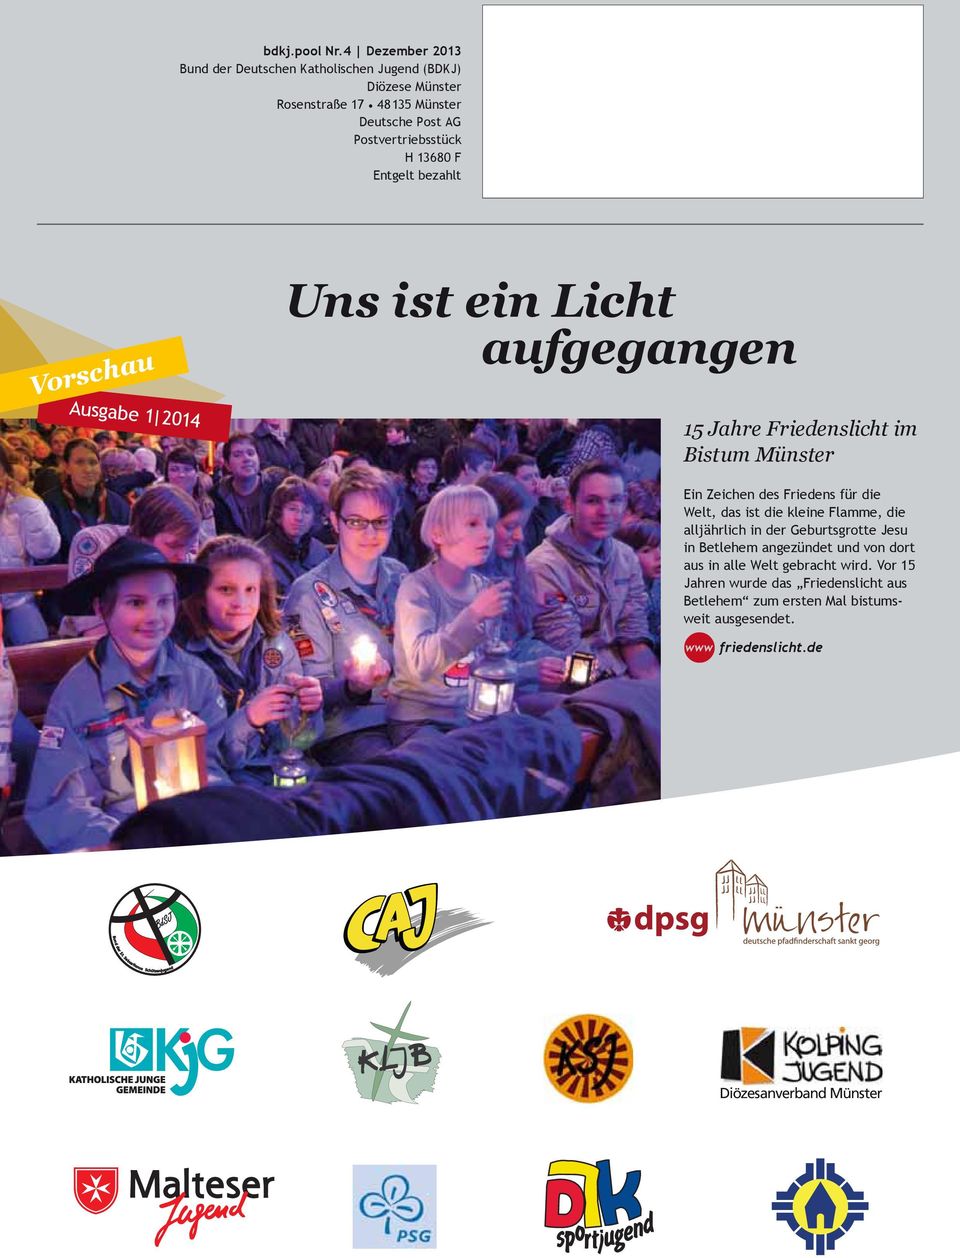 13680 F Entgelt bezahlt Vorschau Ausgabe 1 2014 Uns ist ein Licht aufgegangen 15 Jahre Friedenslicht im Bistum Münster Ein Zeichen des Friedens